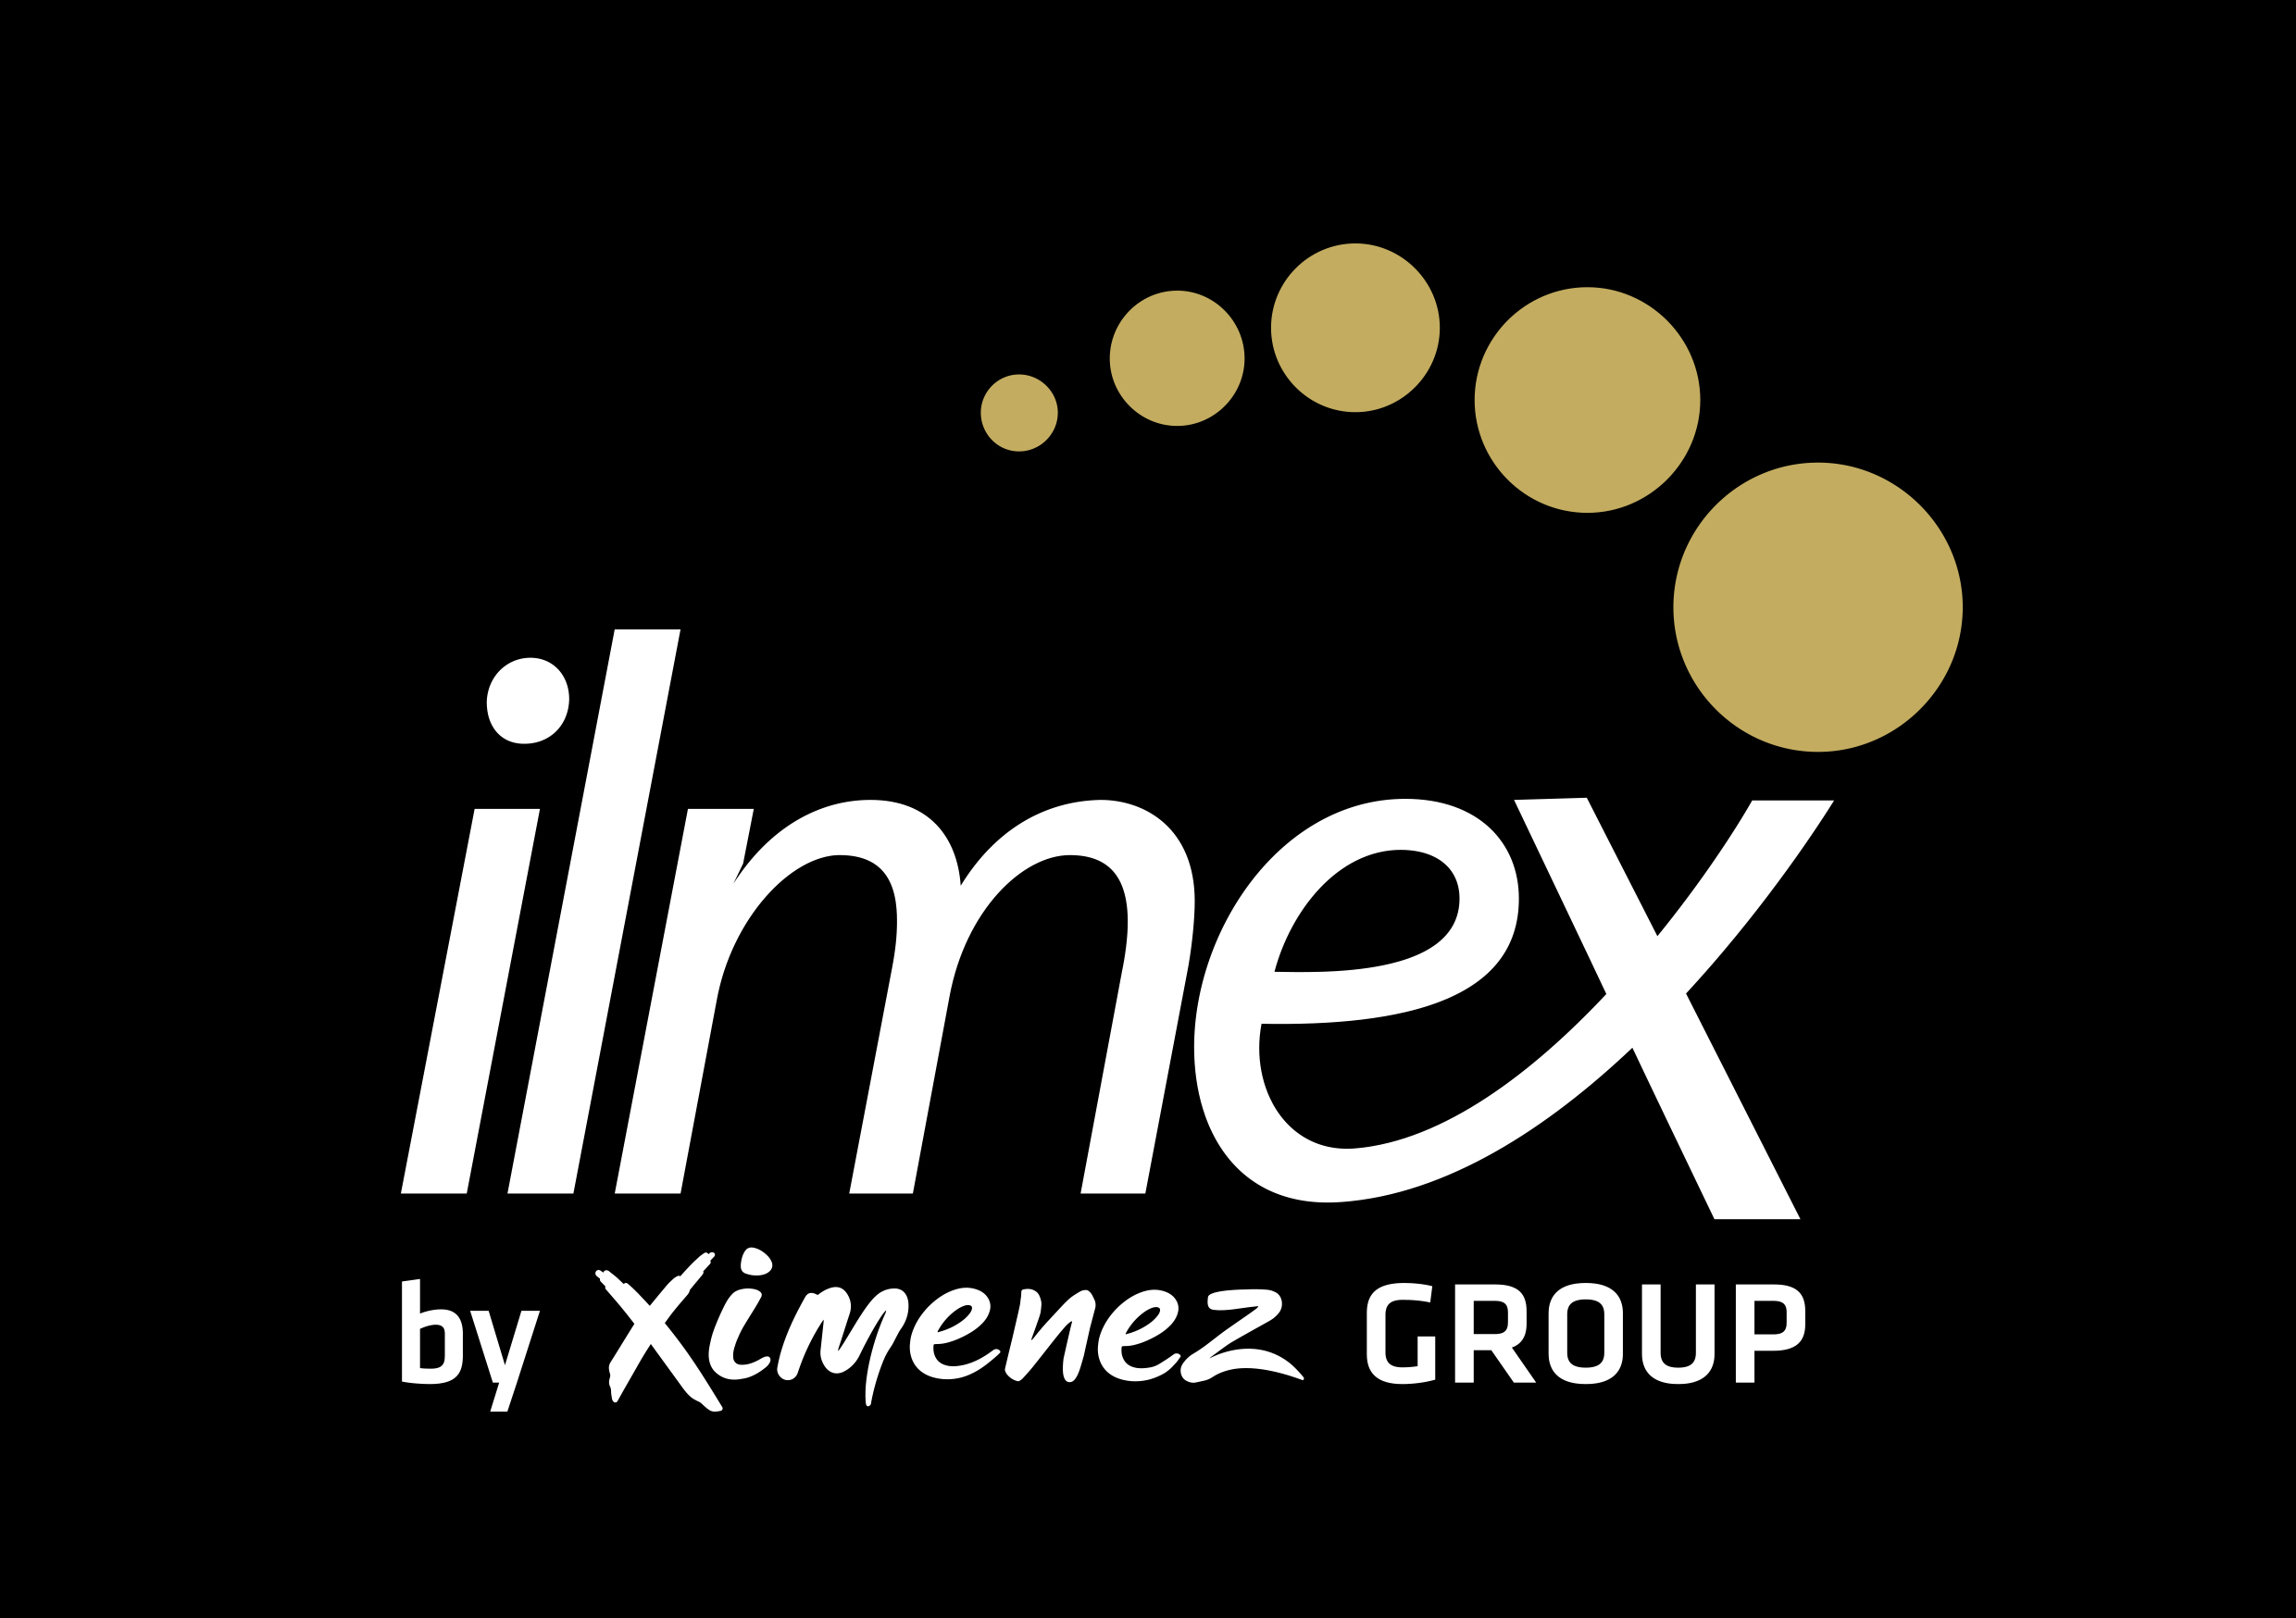 Ilmex